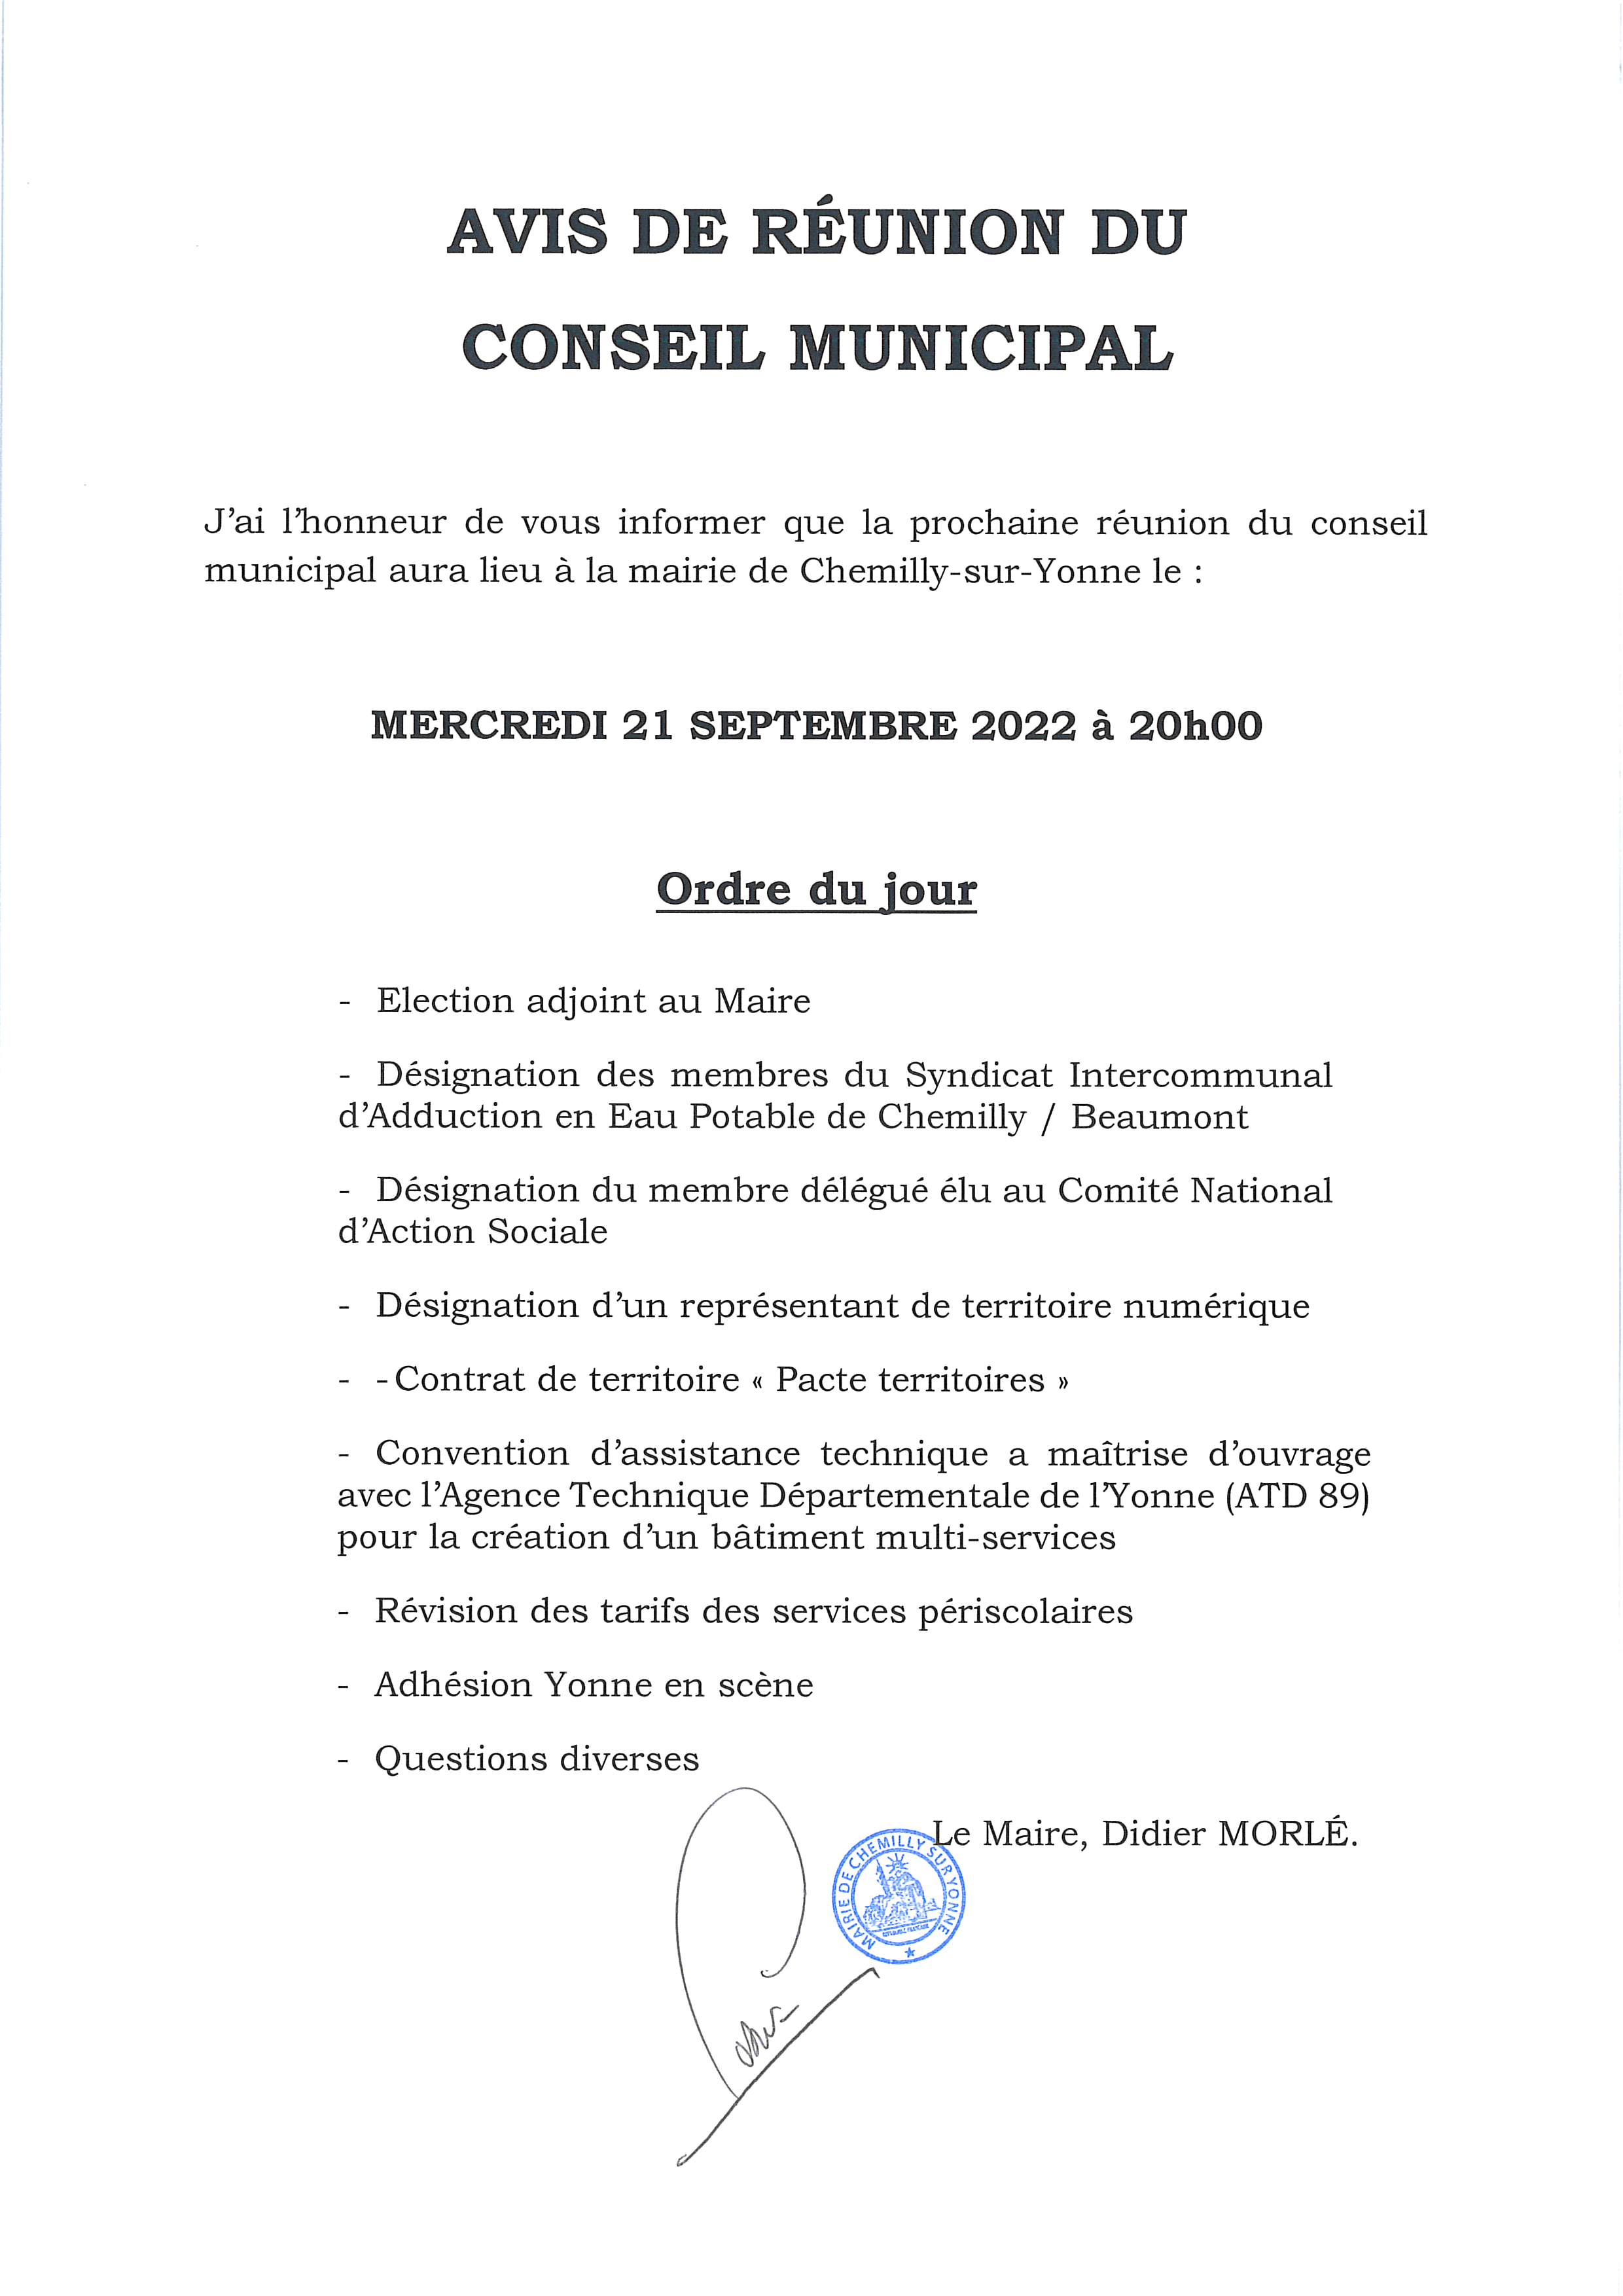 Ordre jour conseil municipal 21 septembre 2022